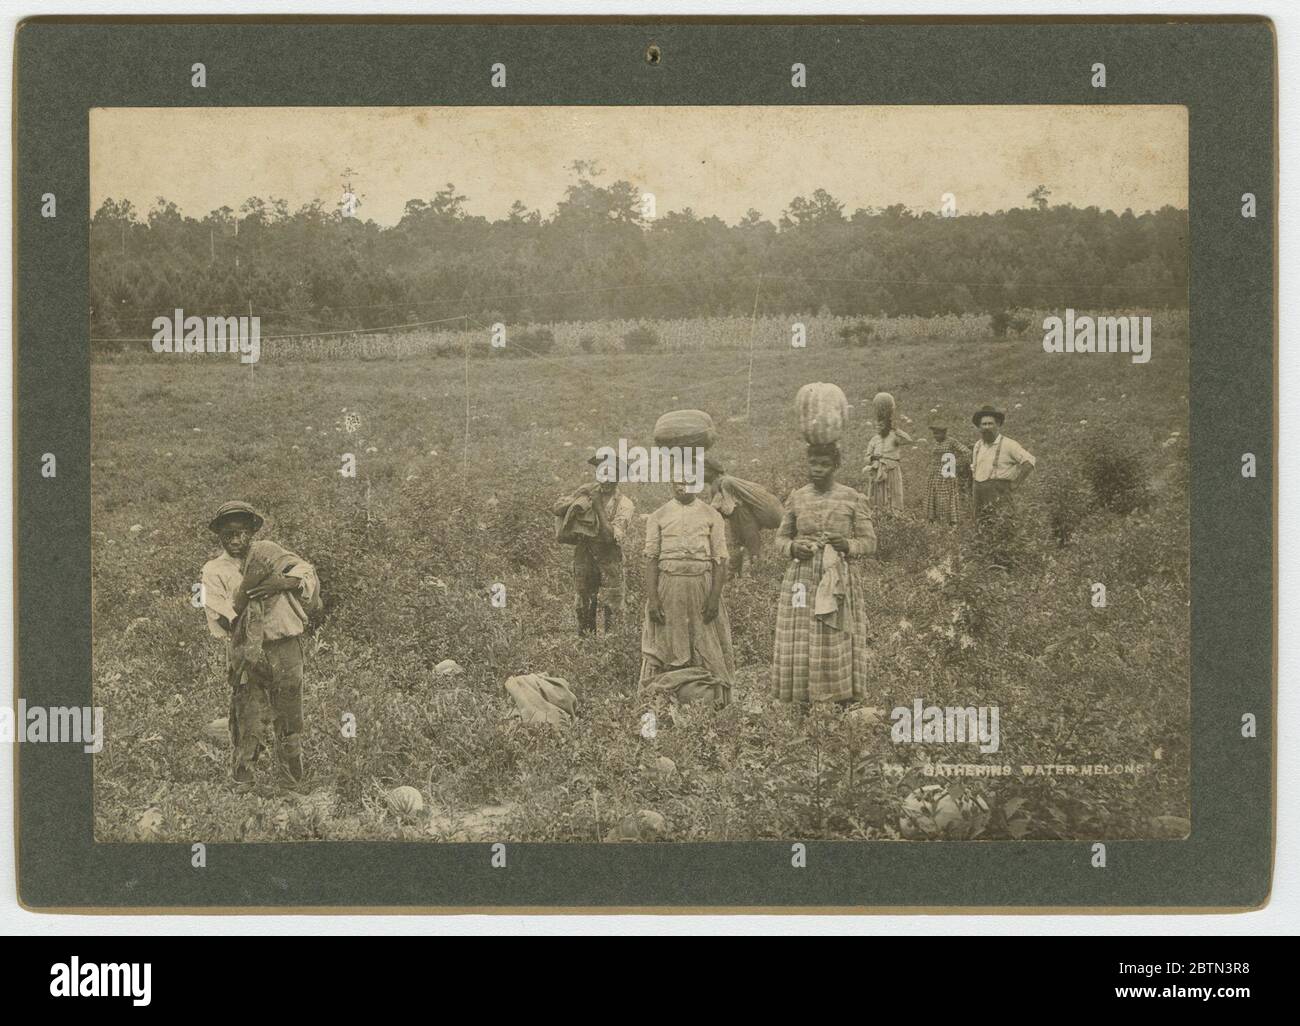 Wassermelonen Sammeln. Ein Albumdruck auf einer Schrankkarte, auf der eine Gruppe Wassermelonen in einem Feld pflückt. Das Foto zeigt vier (4) Männer und vier (4) Frauen, die auf einem großen Feld stehen und einige Wassermelonen oder Taschen tragen. Drei (3) der Frauen haben Wassermelonen auf dem Kopf balanciert. Stockfoto